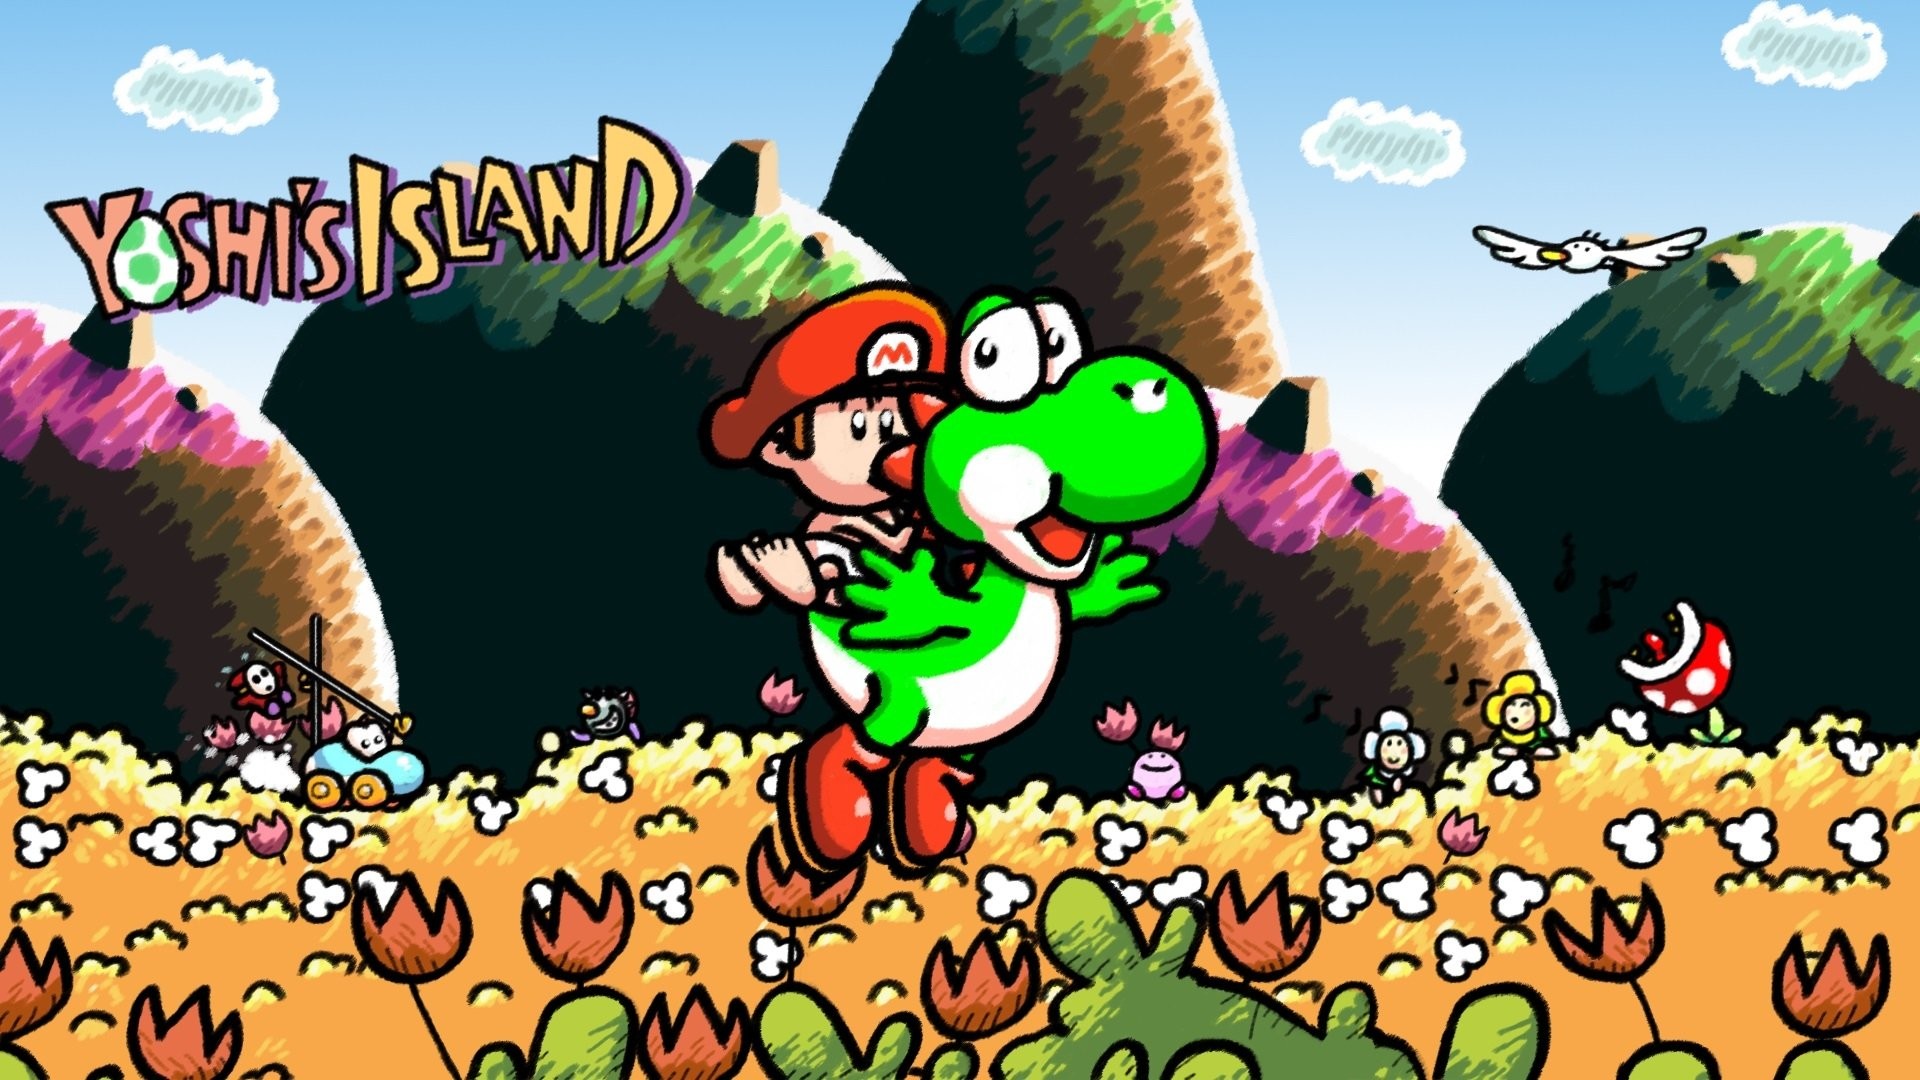 Mario yoshi island. Super Mario World 2 Yoshi's Island. Super Mario World 2 - Yoshi's Island Snes. Mario Yoshi Island 3. Super Mario World 2 остров Йоши.